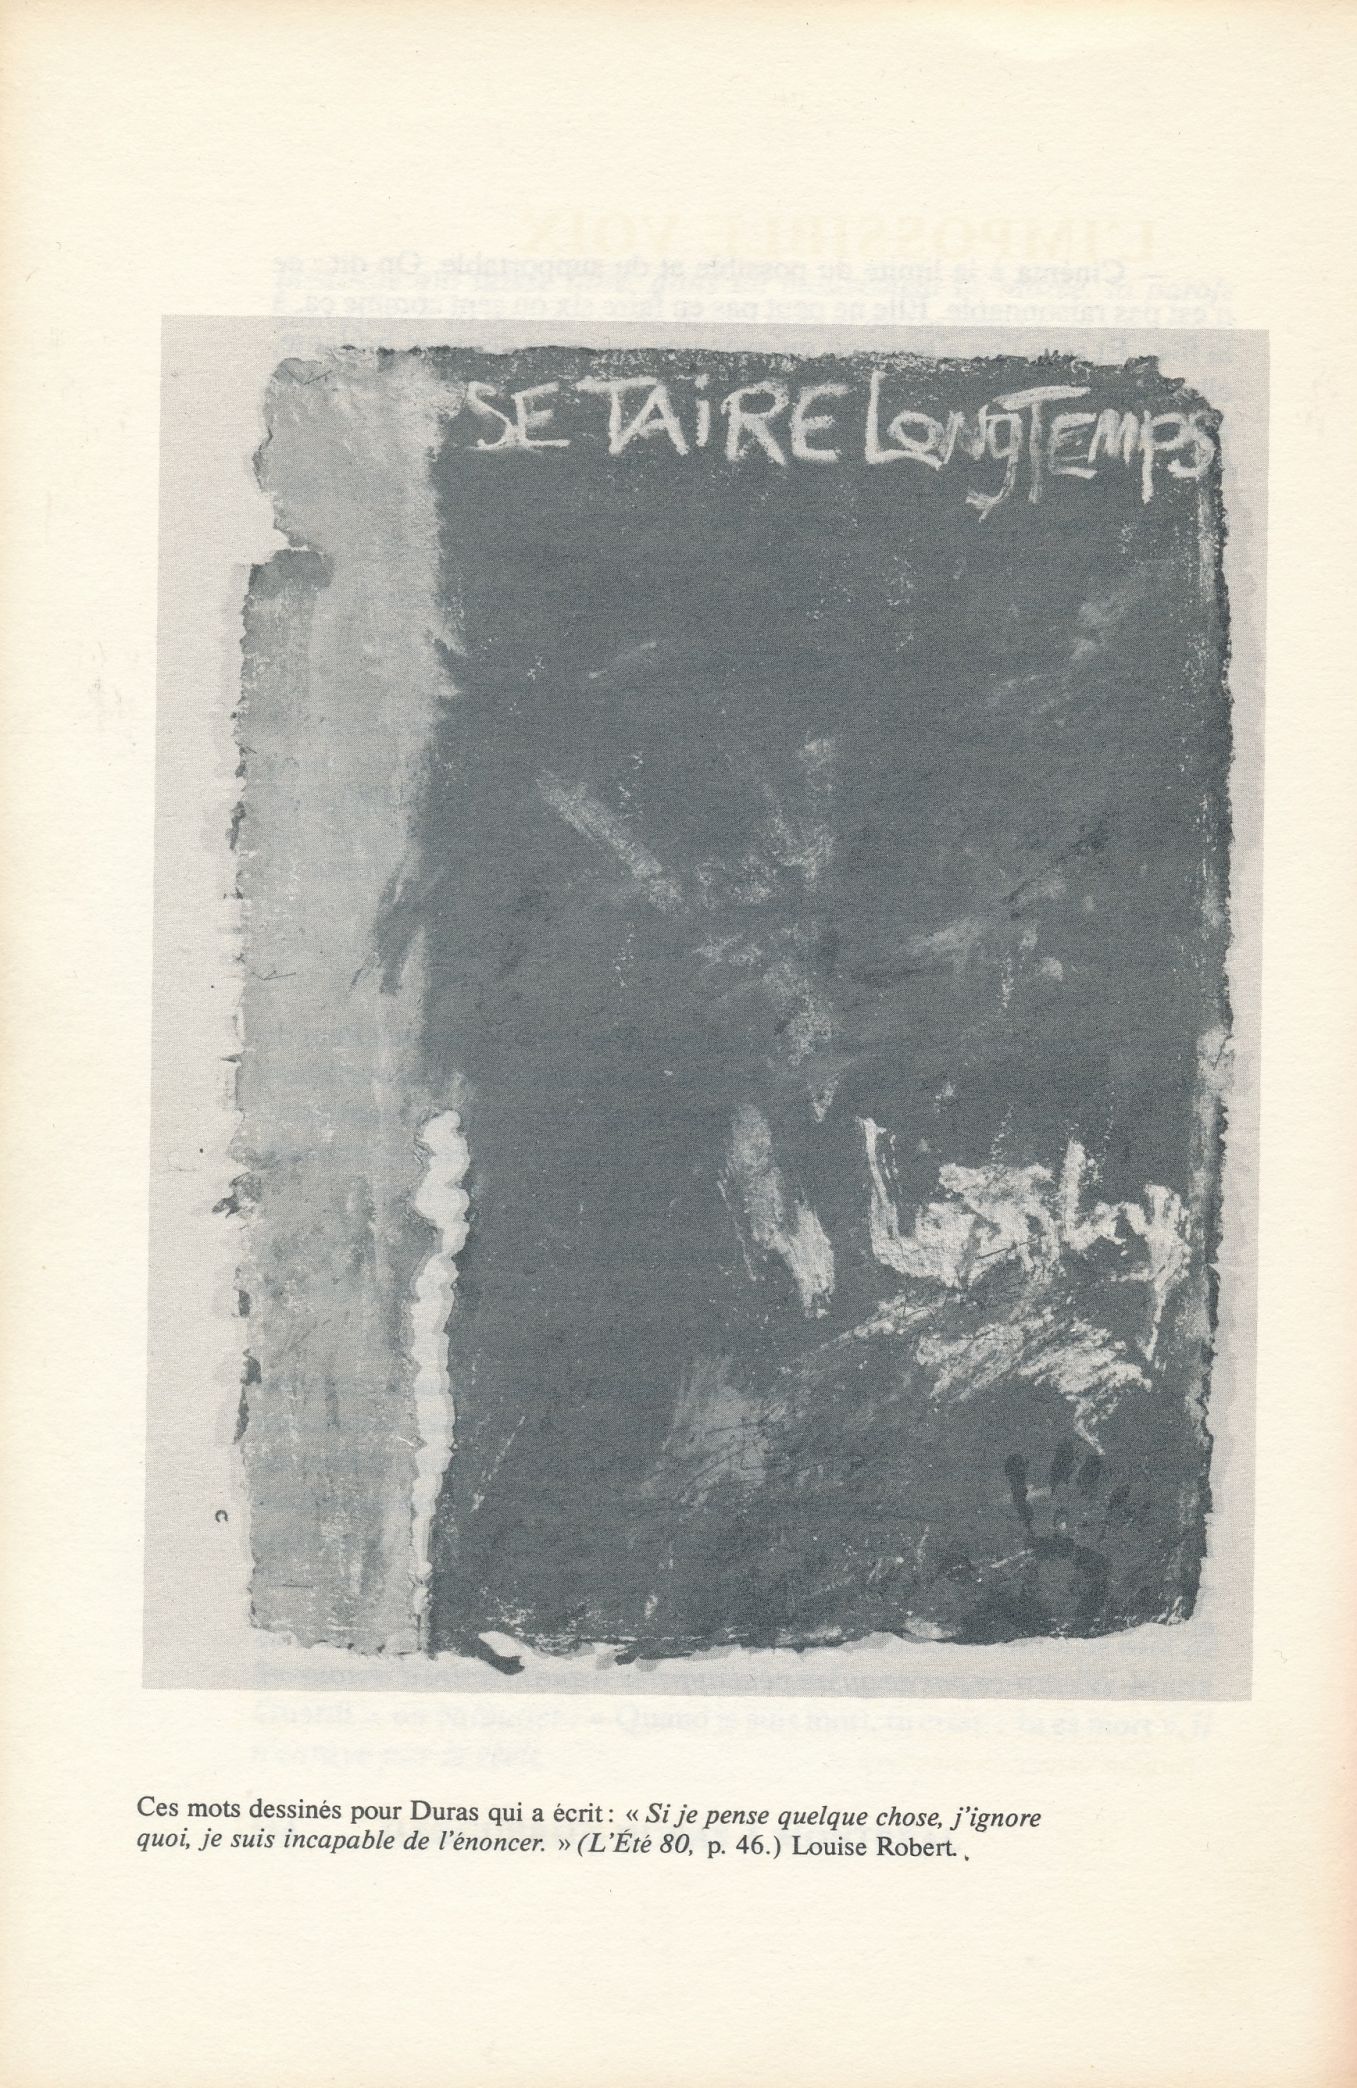 Reproduction du dessin N° 411, 1981, dans Suzanne LAMY et André ROY (sous la direction de), Marguerite Duras à Montréal, Montréal, Édition Spirale, 1981, p. 156.